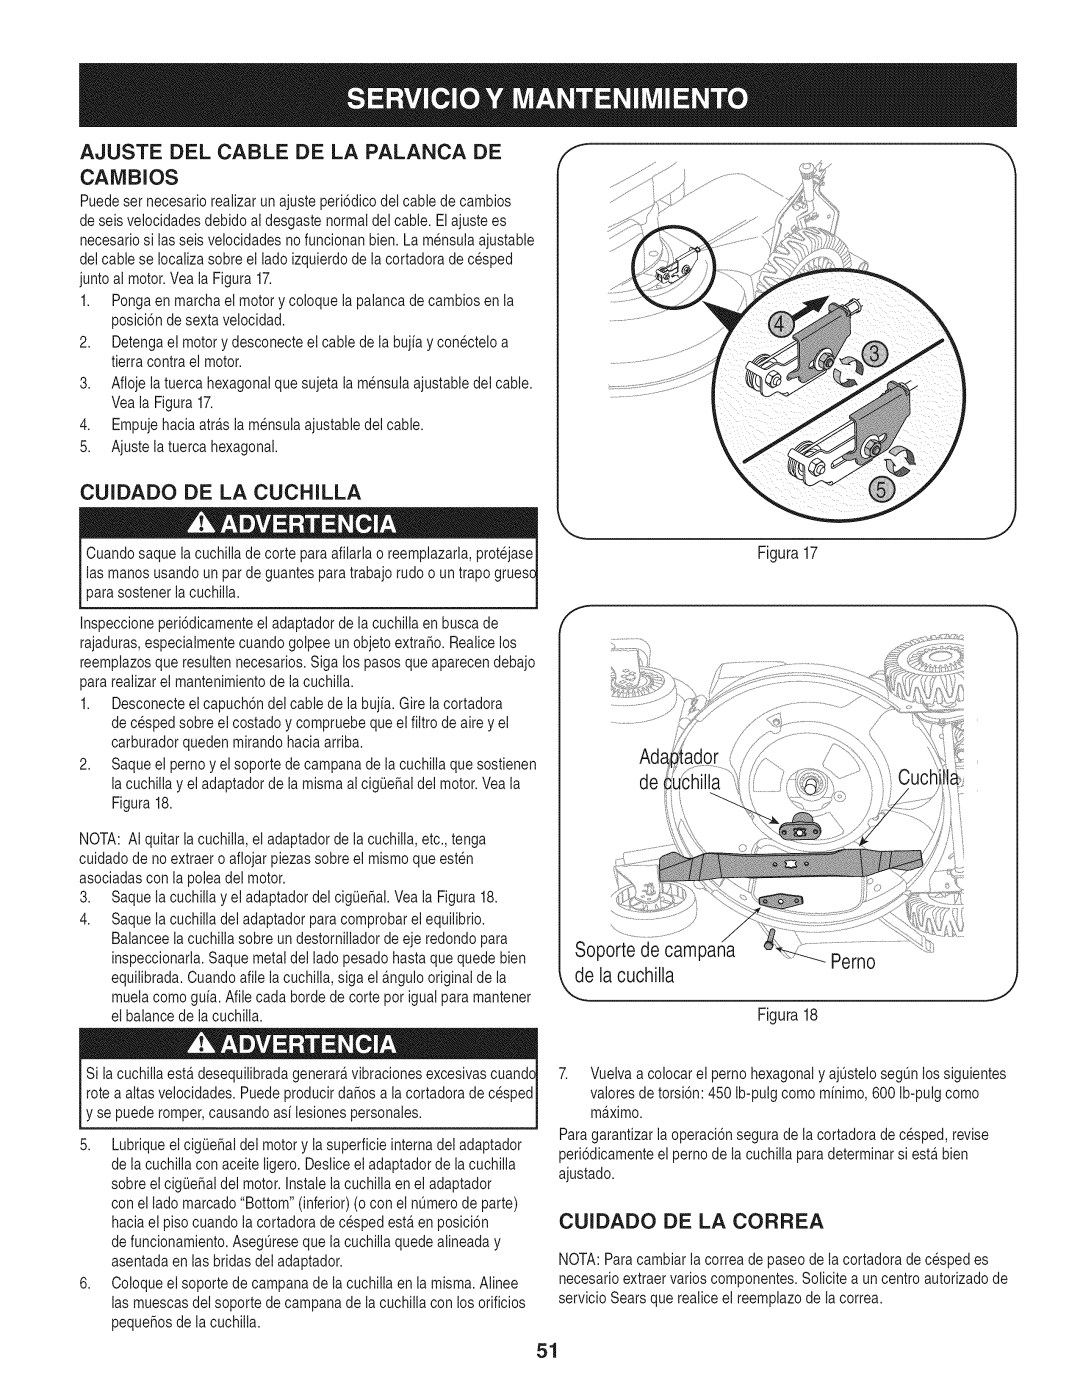 Craftsman 247.887210 manual Ajuste Del Cable De La Palanca De, CAiVIBIOS, Cuidado De La Cuchilla, Soporte de campana, Perno 